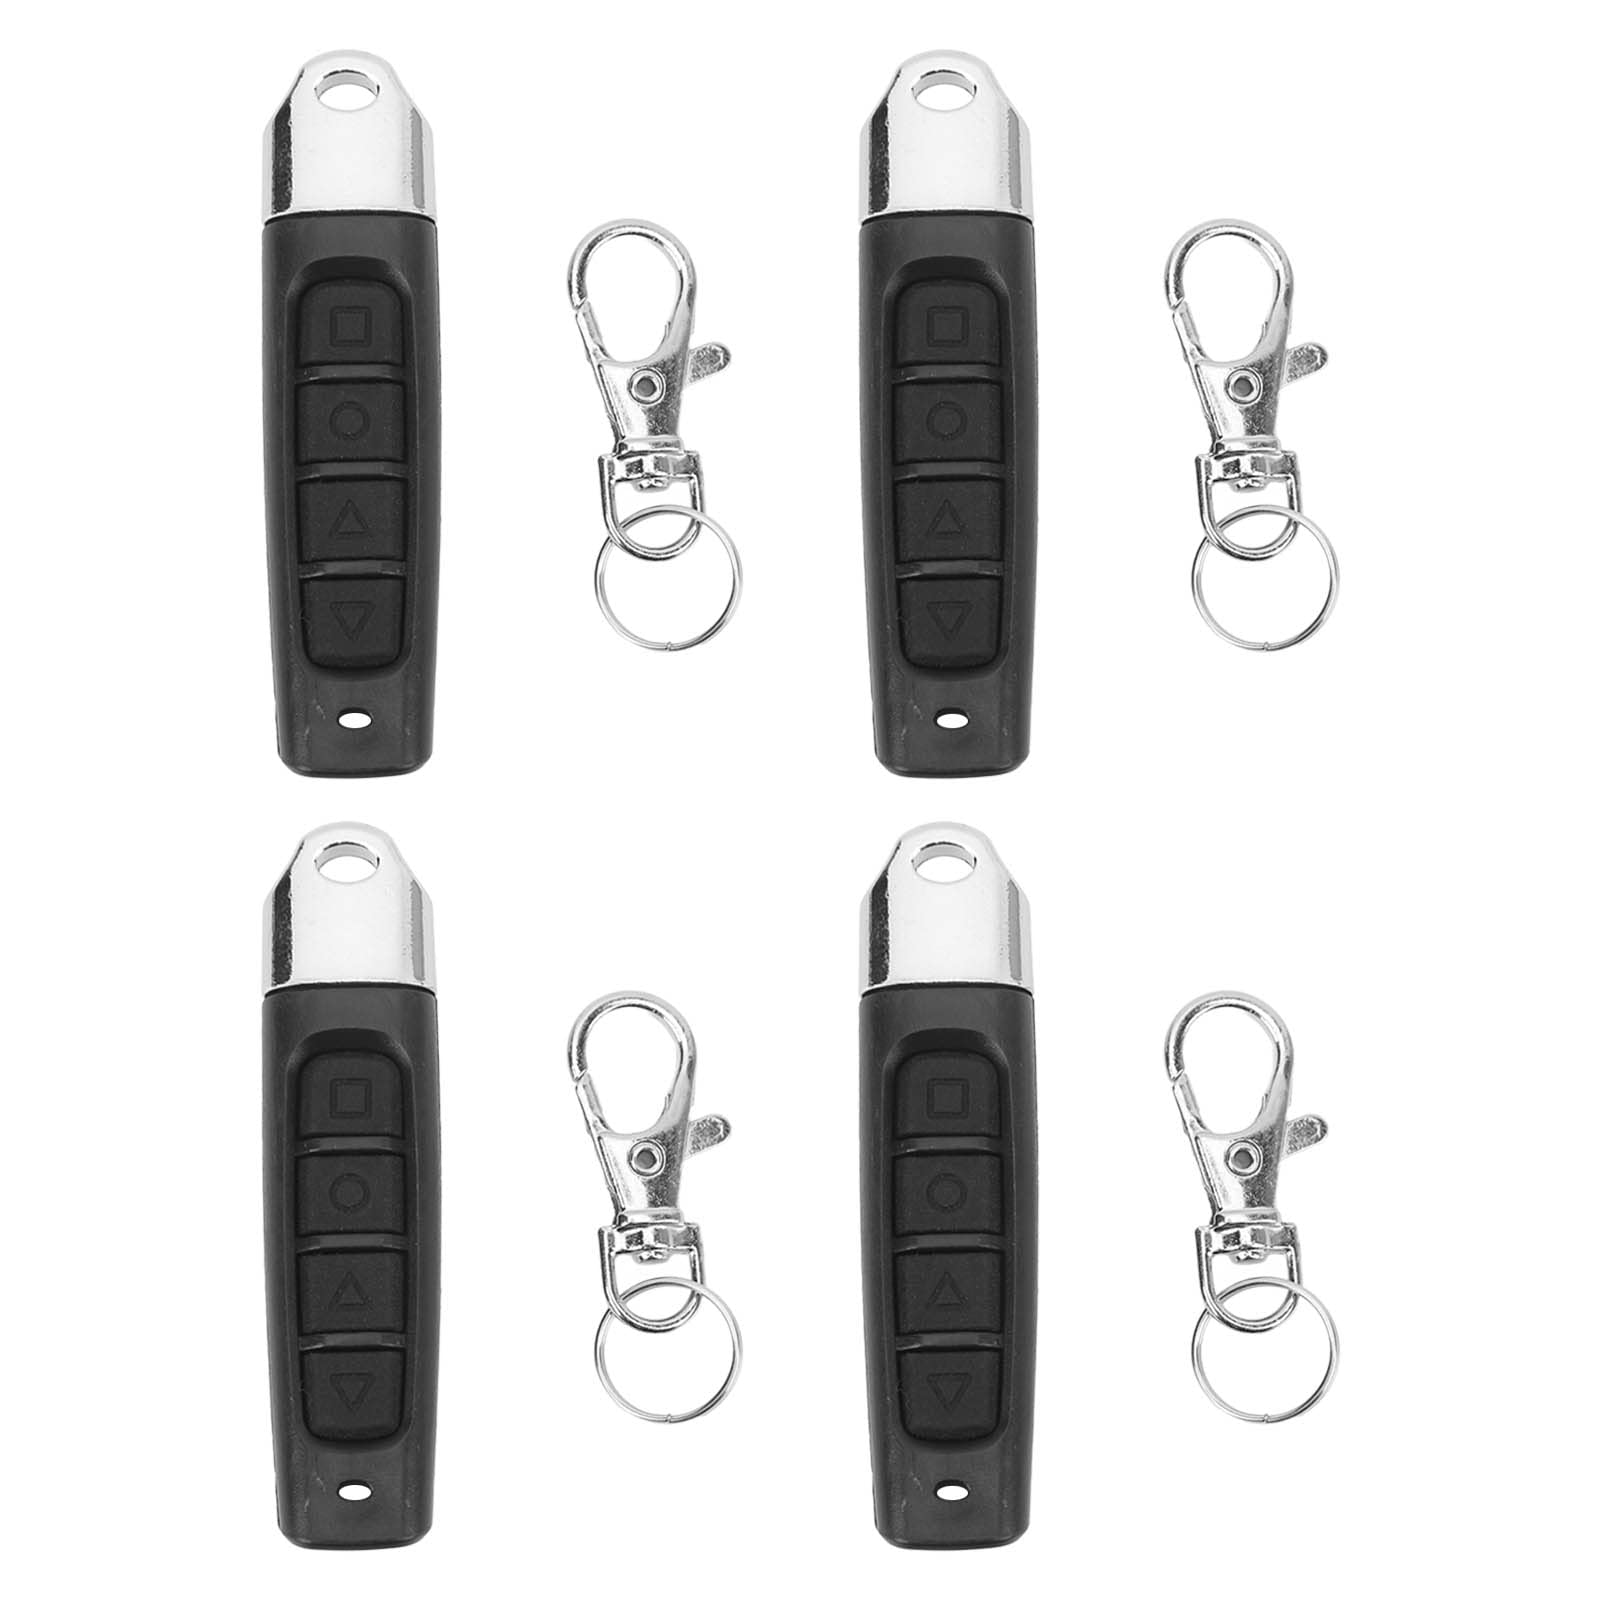 Klon-Fernbedienungs-Schlüsselanhänger, 4 Stück, Klon-Fernbedienungs-Schlüsselanhänger, 433 MHz, 4-Kanal-elektrische Garagentor-Fernbedienung für Autos, Klon-Schlüsselanhänger von Yosoo